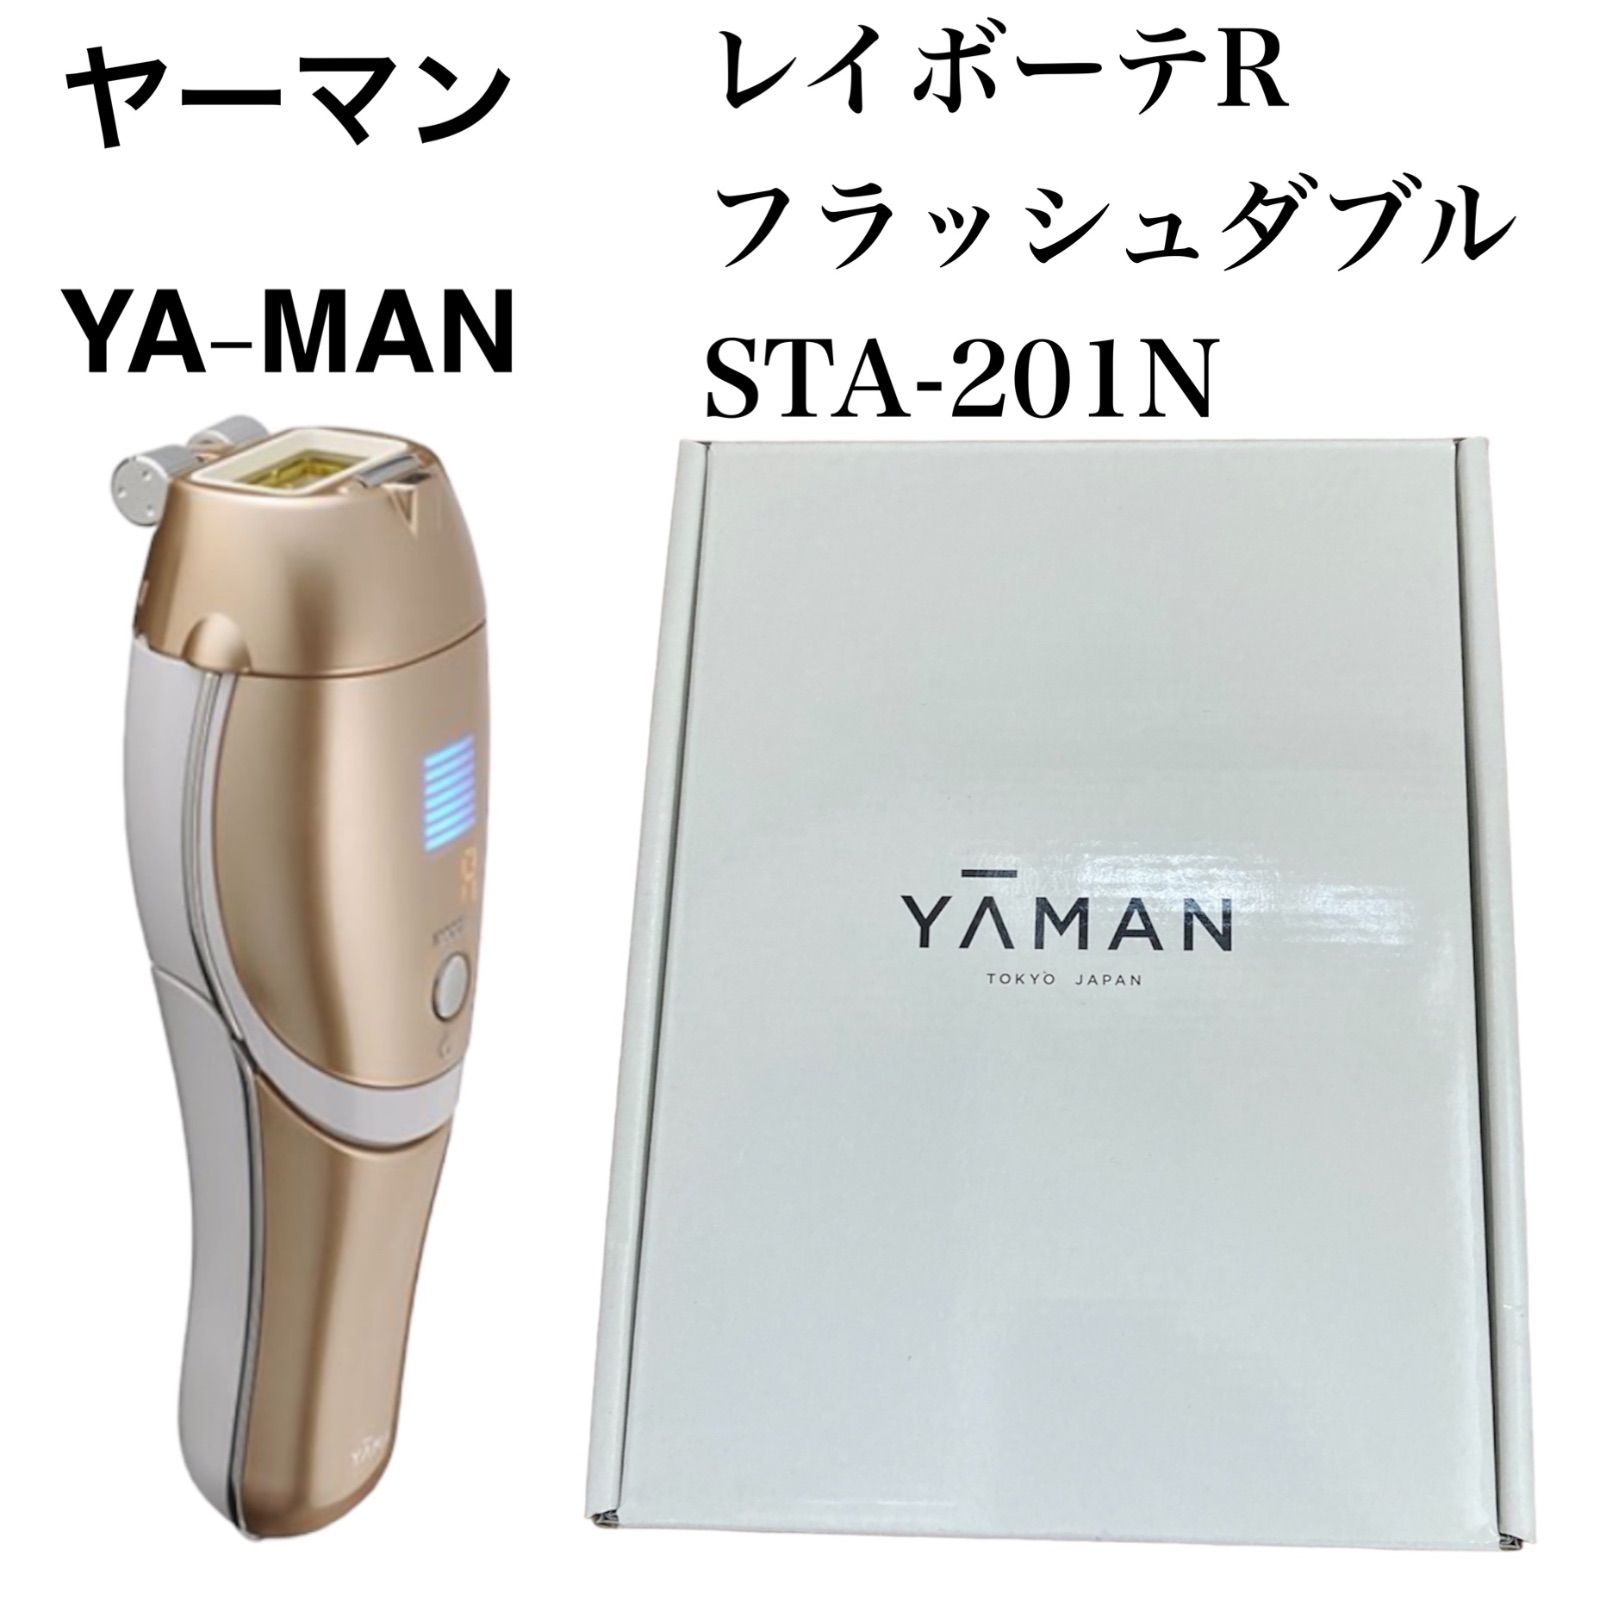 【新品】ヤーマン 家庭用光美容器 レイボーテ R フラッシュダブル